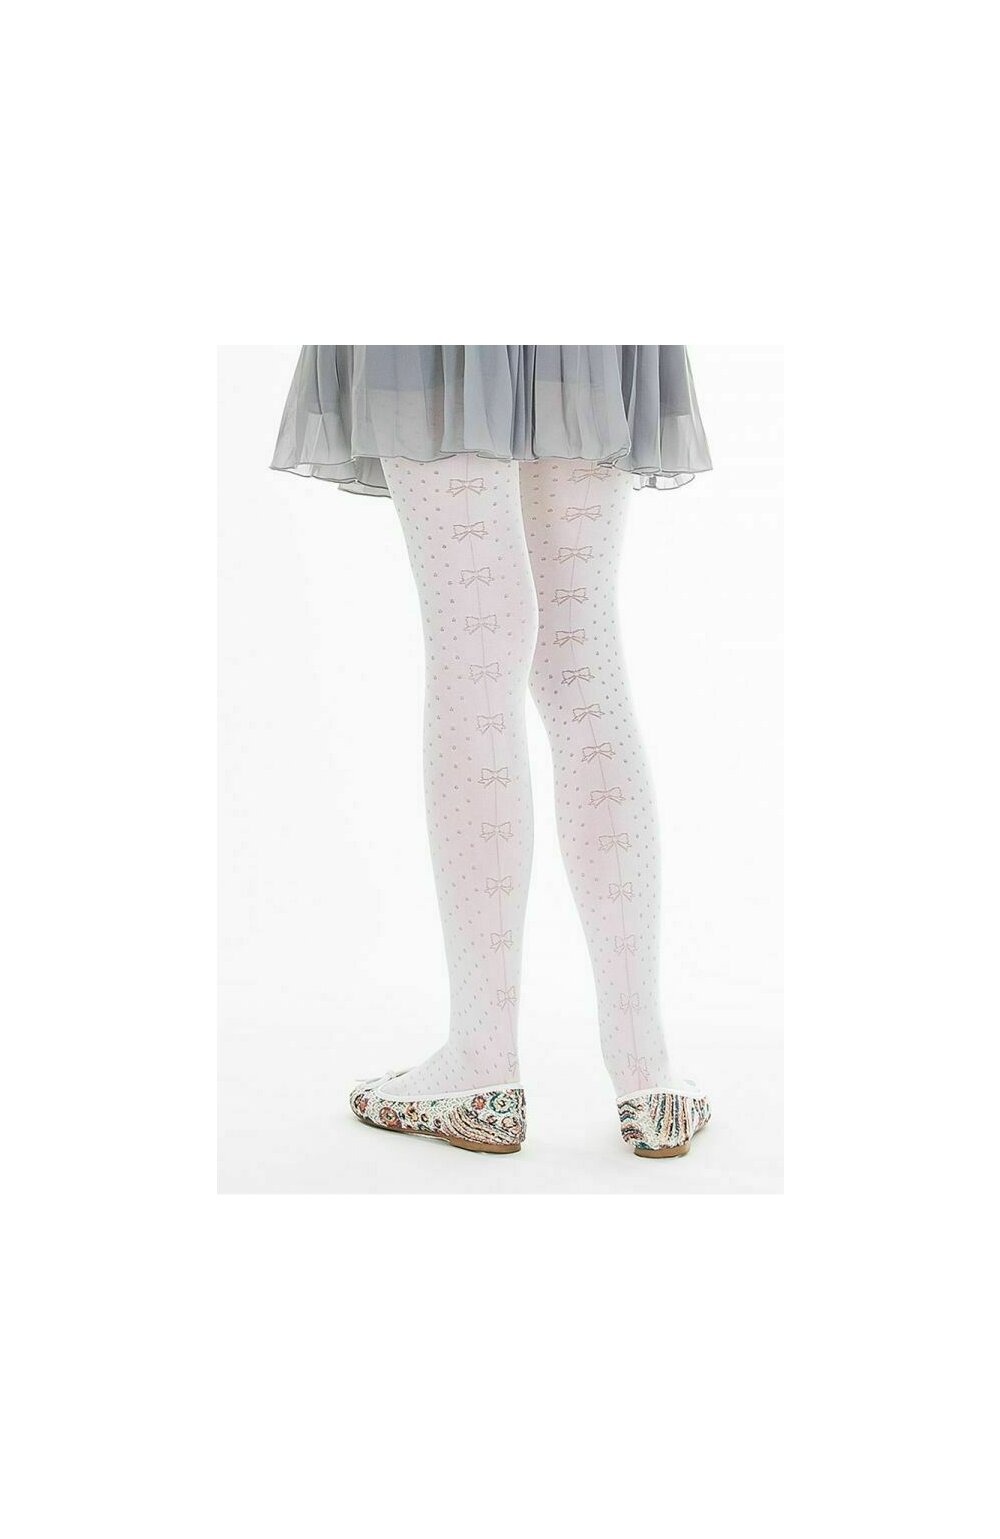 Ciorapi cu model pentru fetite – Marilyn Lily C83, 60 DEN – violet, roz C83 imagine noua 2022